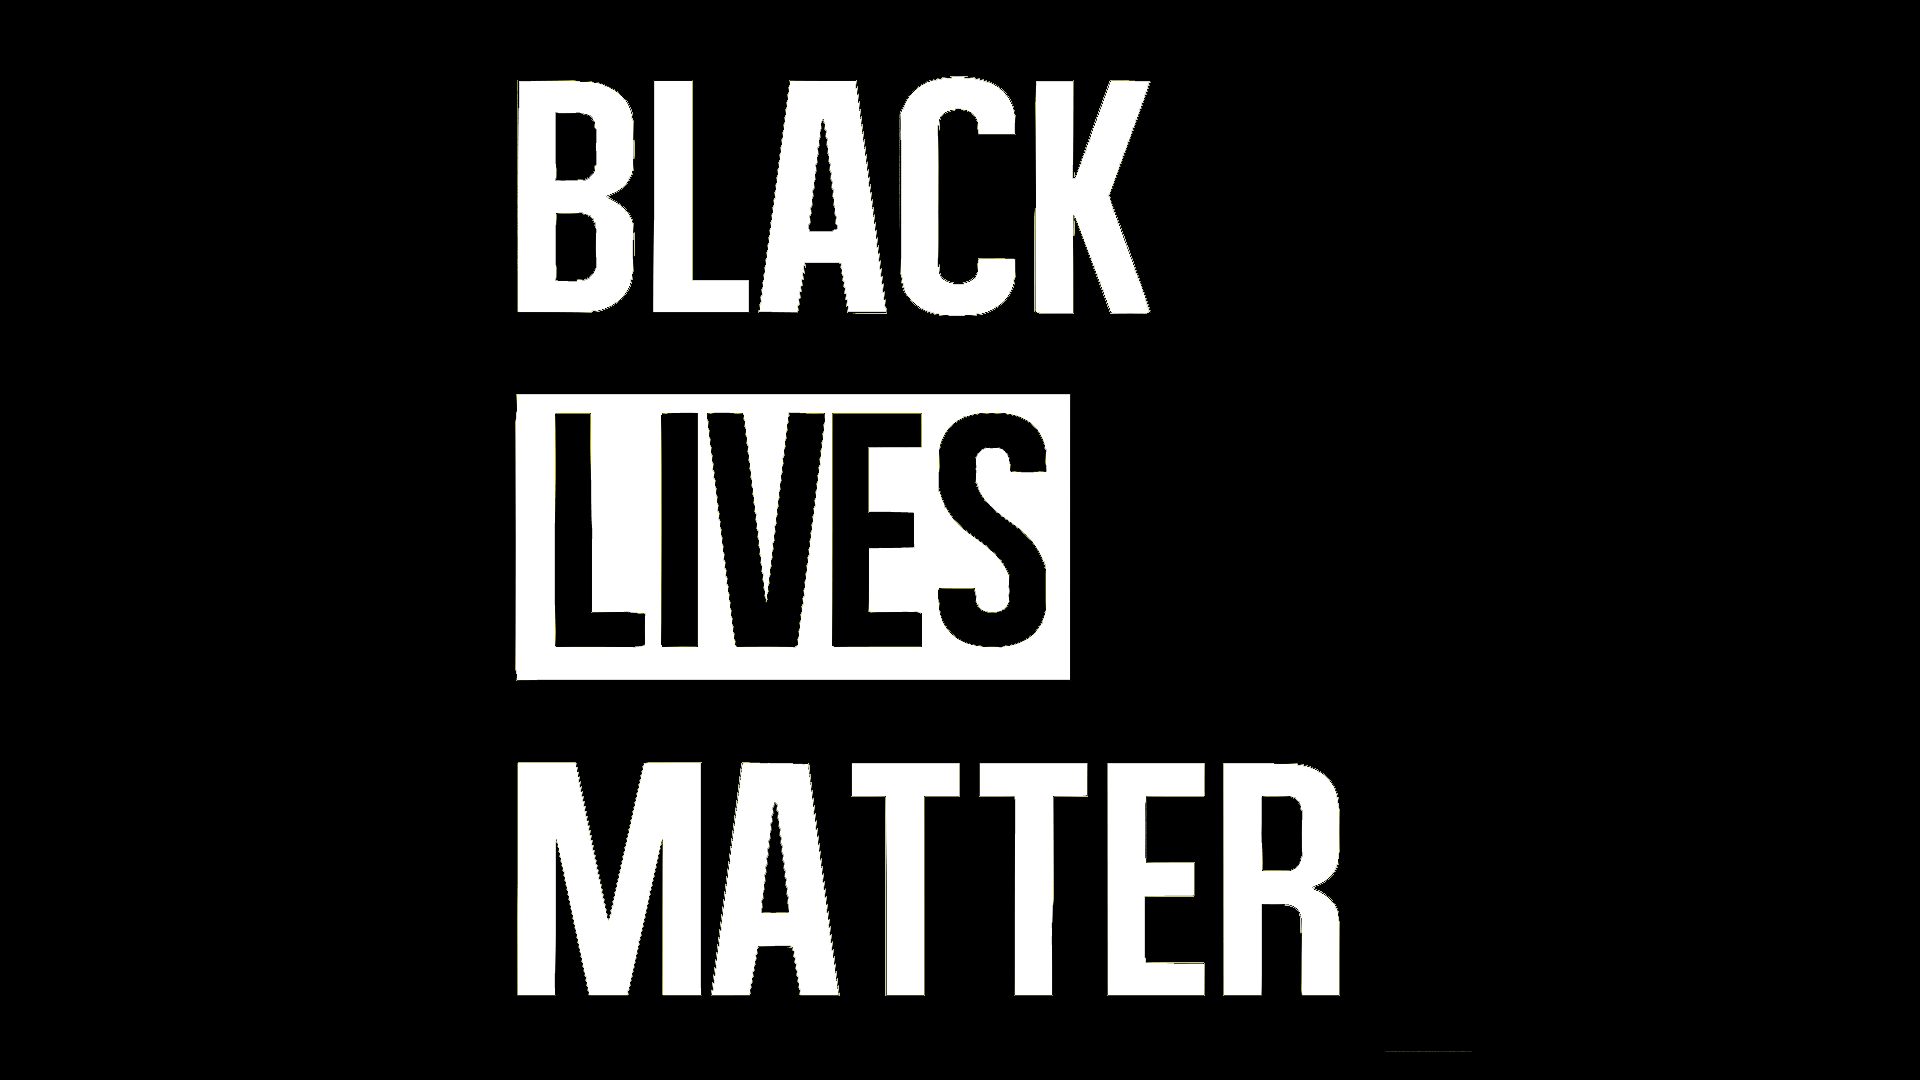 Black Lives Matter Image